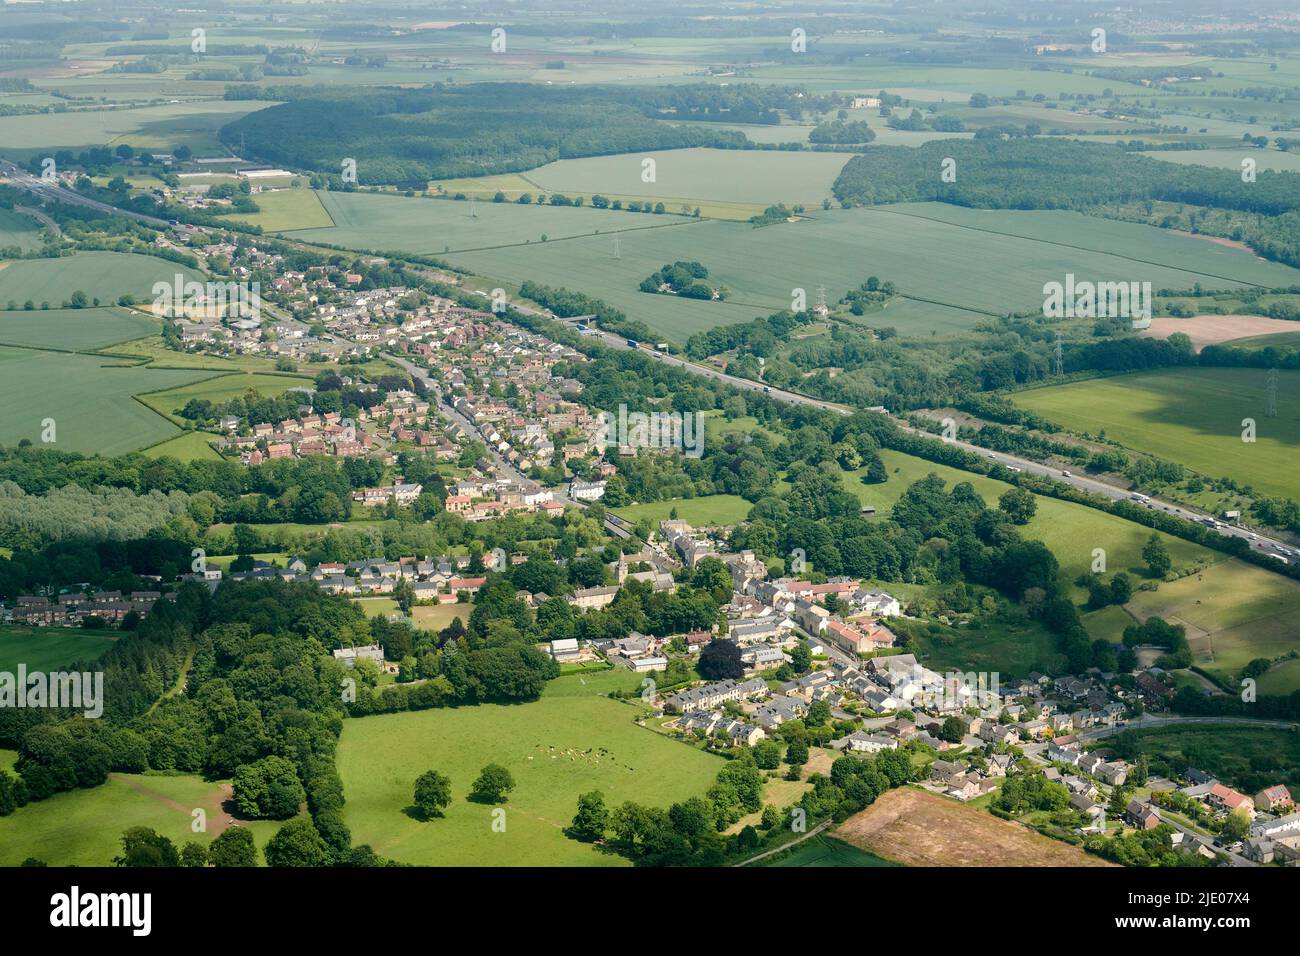 Das Dorf Aberford, West Yorkshire, Nordengland, Route der alten A1, angrenzend an die neue Autobahn A1, aus der Luft geschossen Stockfoto